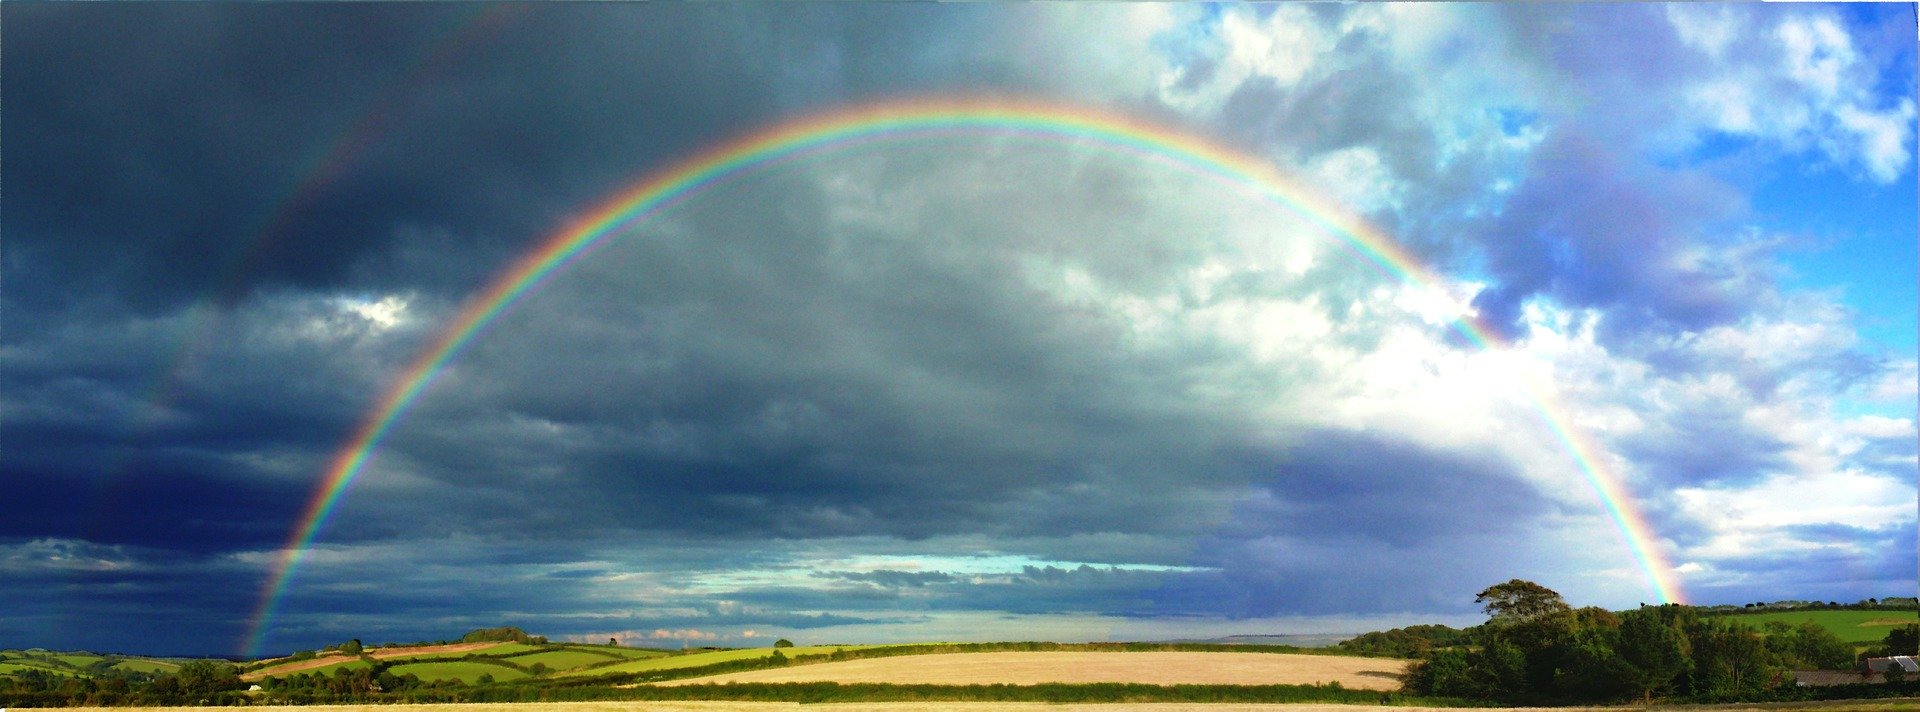 rainbow-1909_1920 (c) Bild von PublicDomainPictures auf Pixabay